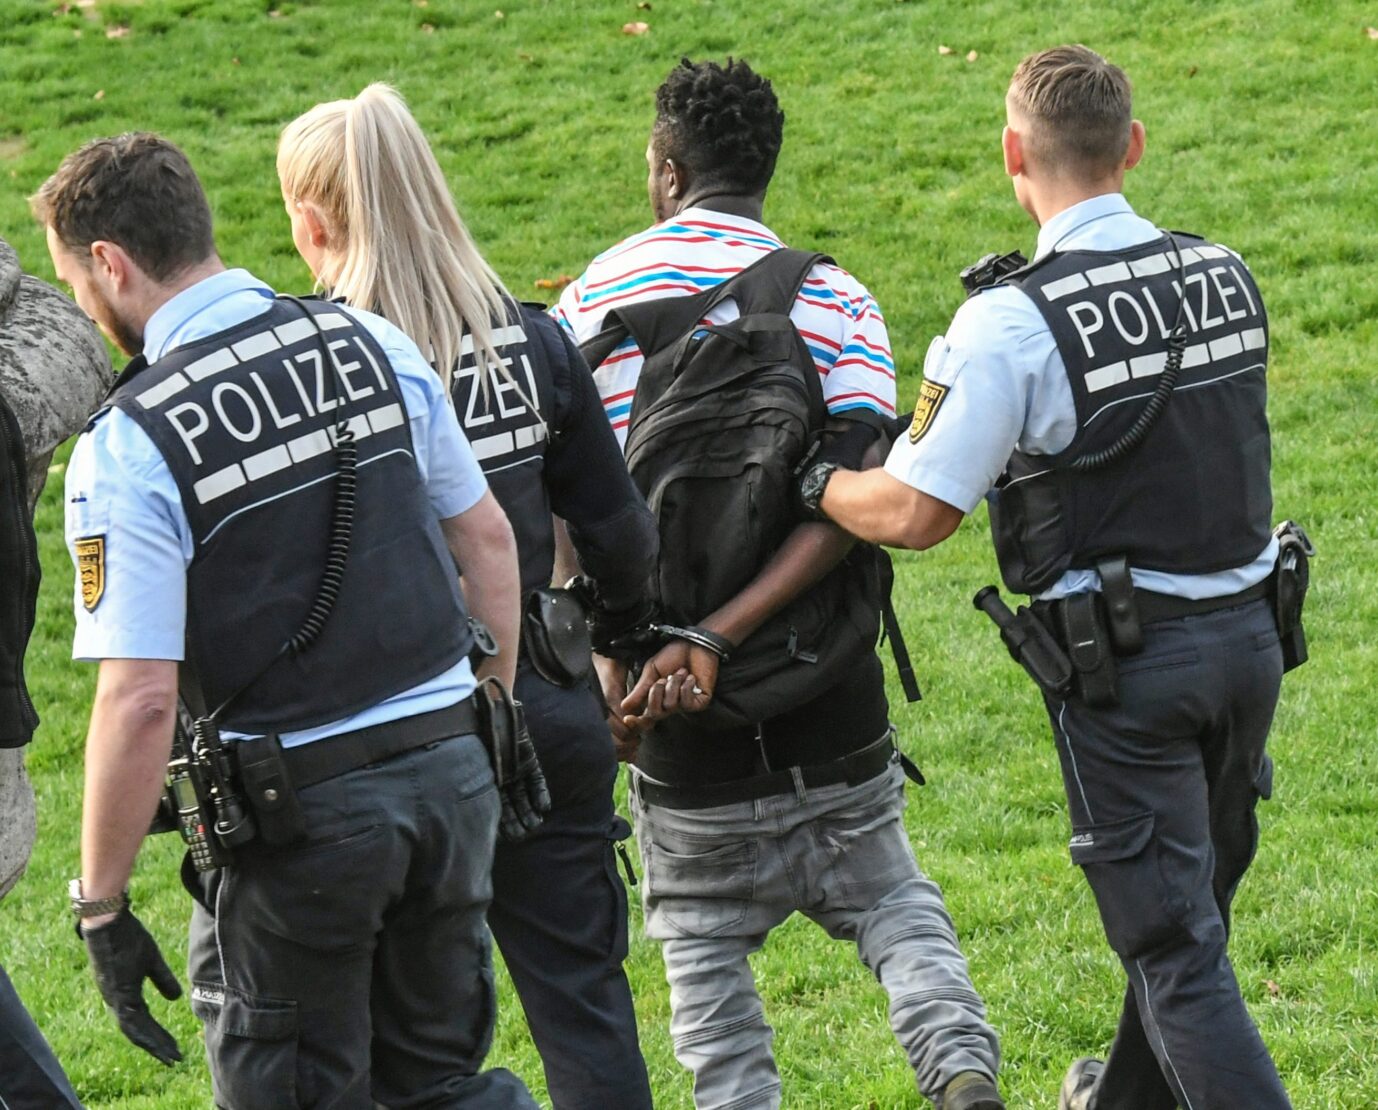 Auf dem Foto befindet sich ein von drei Polizisten festgenommener Schwarzer auf der Wiese. Dieses Bild soll den Aufwand der Polizei im Kampf gegen kriminelle Asylbewerber, Illegale und anerkannte Schutzsuchende verdeutlichen. (Symbolbild)